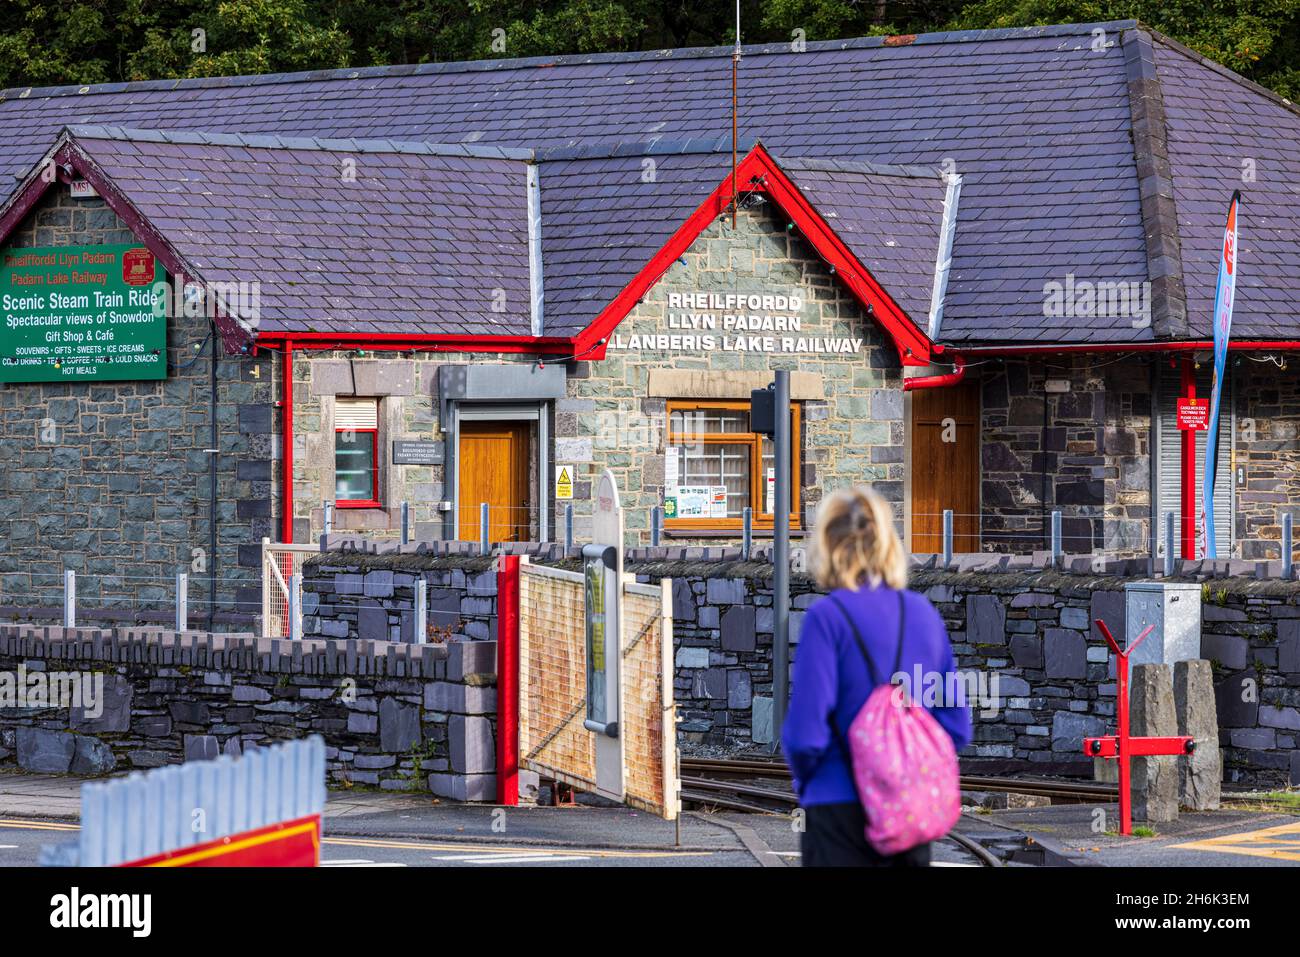 Gare de Llanberis Lake, début de la pittoresque promenade en train à vapeur au bord du lac, Llanberis, pays de Galles, Royaume-Uni, Banque D'Images